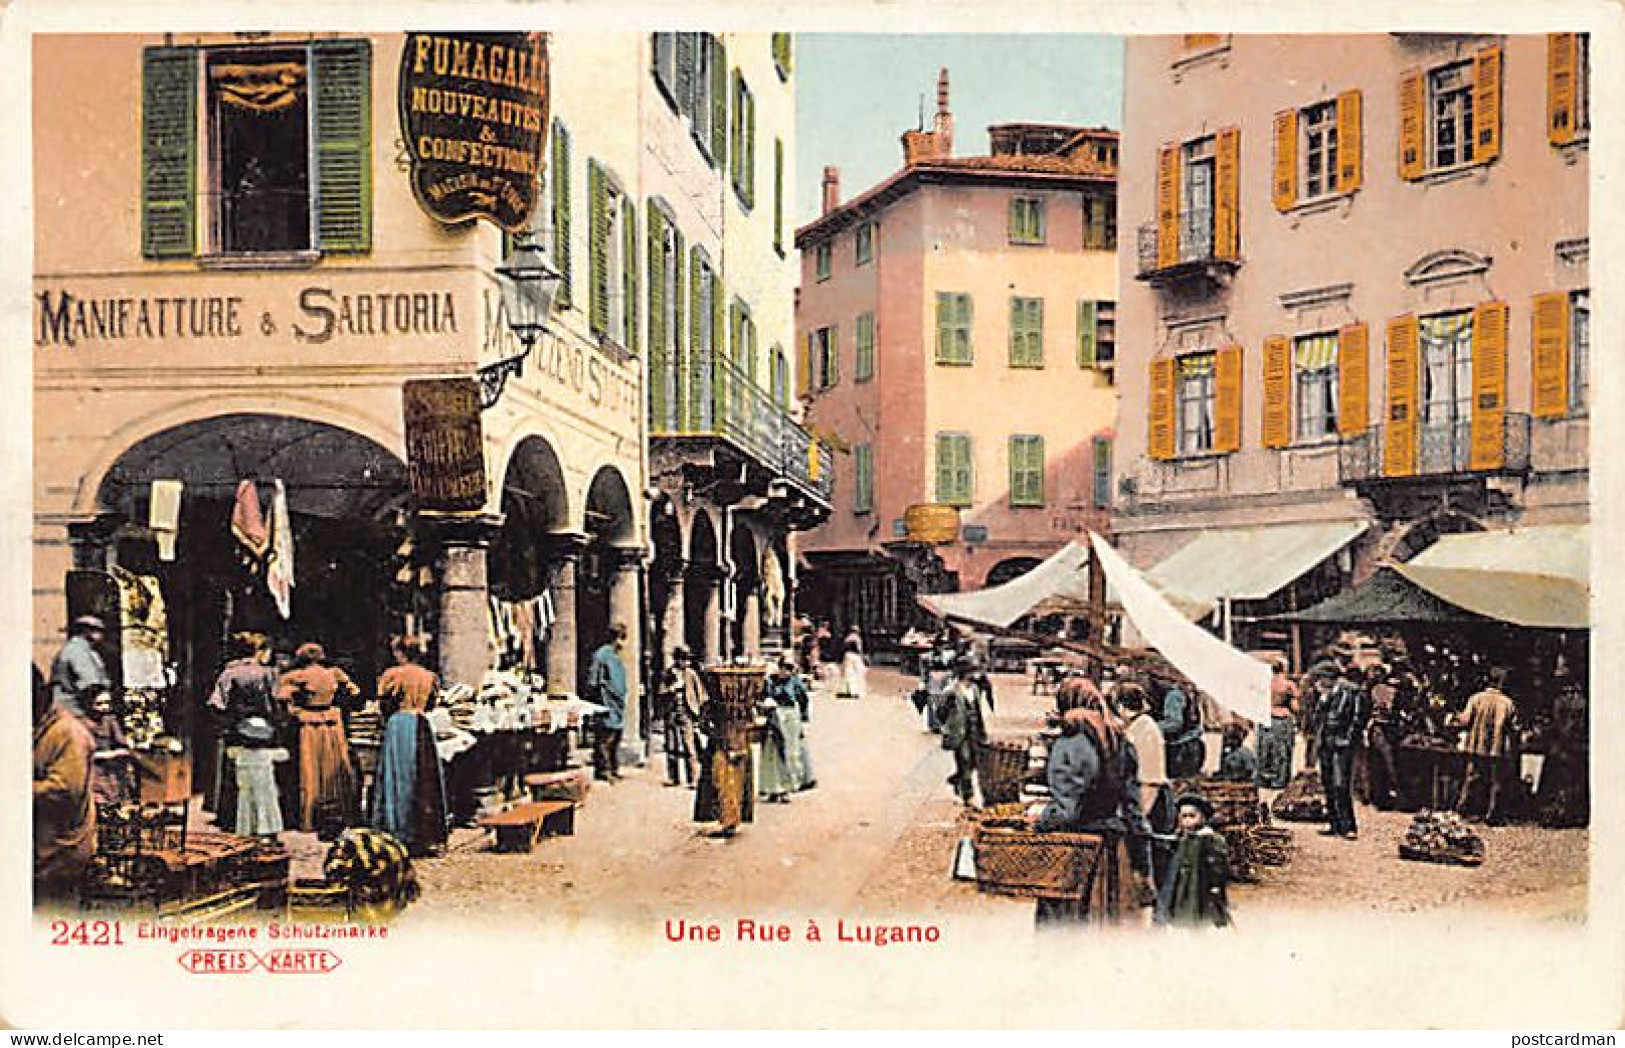 LUGANO (TI) Una Strada Del Centro Città - Fumagalli Manifatture & Sartoria - Ed. Preis Karte 2421 - Lugano